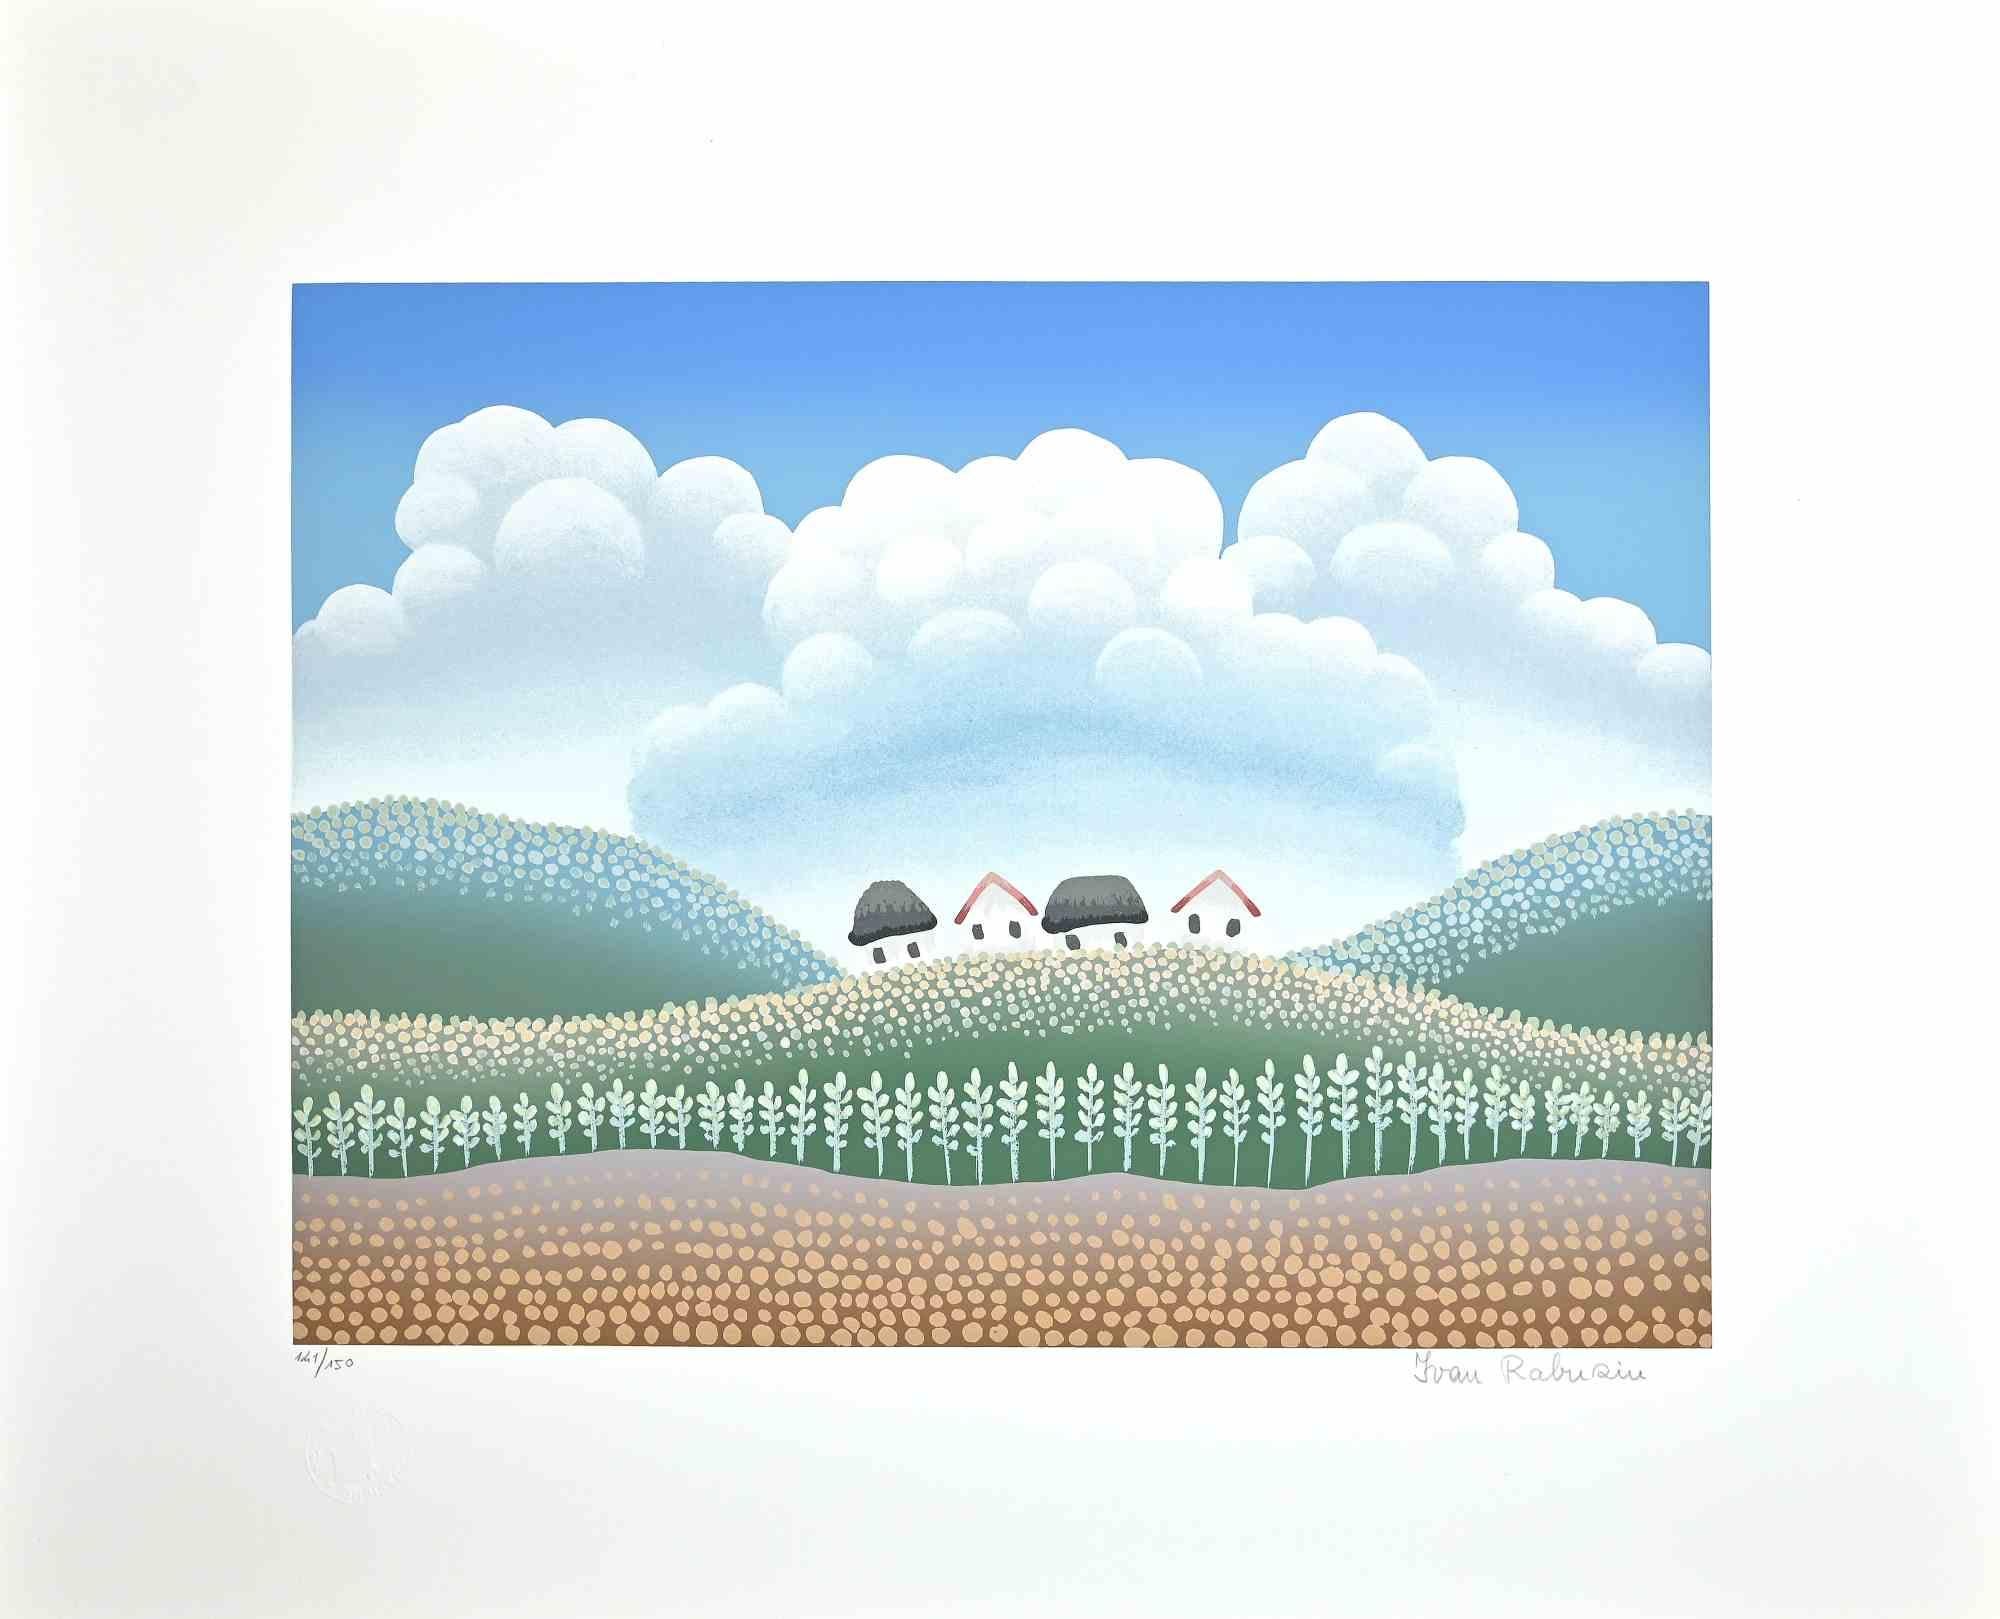 Landscape ist ein originaler farbiger Siebdruck auf Papier, der von Ivan Rabuzin in den 1990er Jahren realisiert wurde.

Handsigniert mit Bleistift am unteren Rand.  

Ausgezeichnete Bedingungen. Am unteren Rand nummeriert 141/150 Abzüge.

Dieser